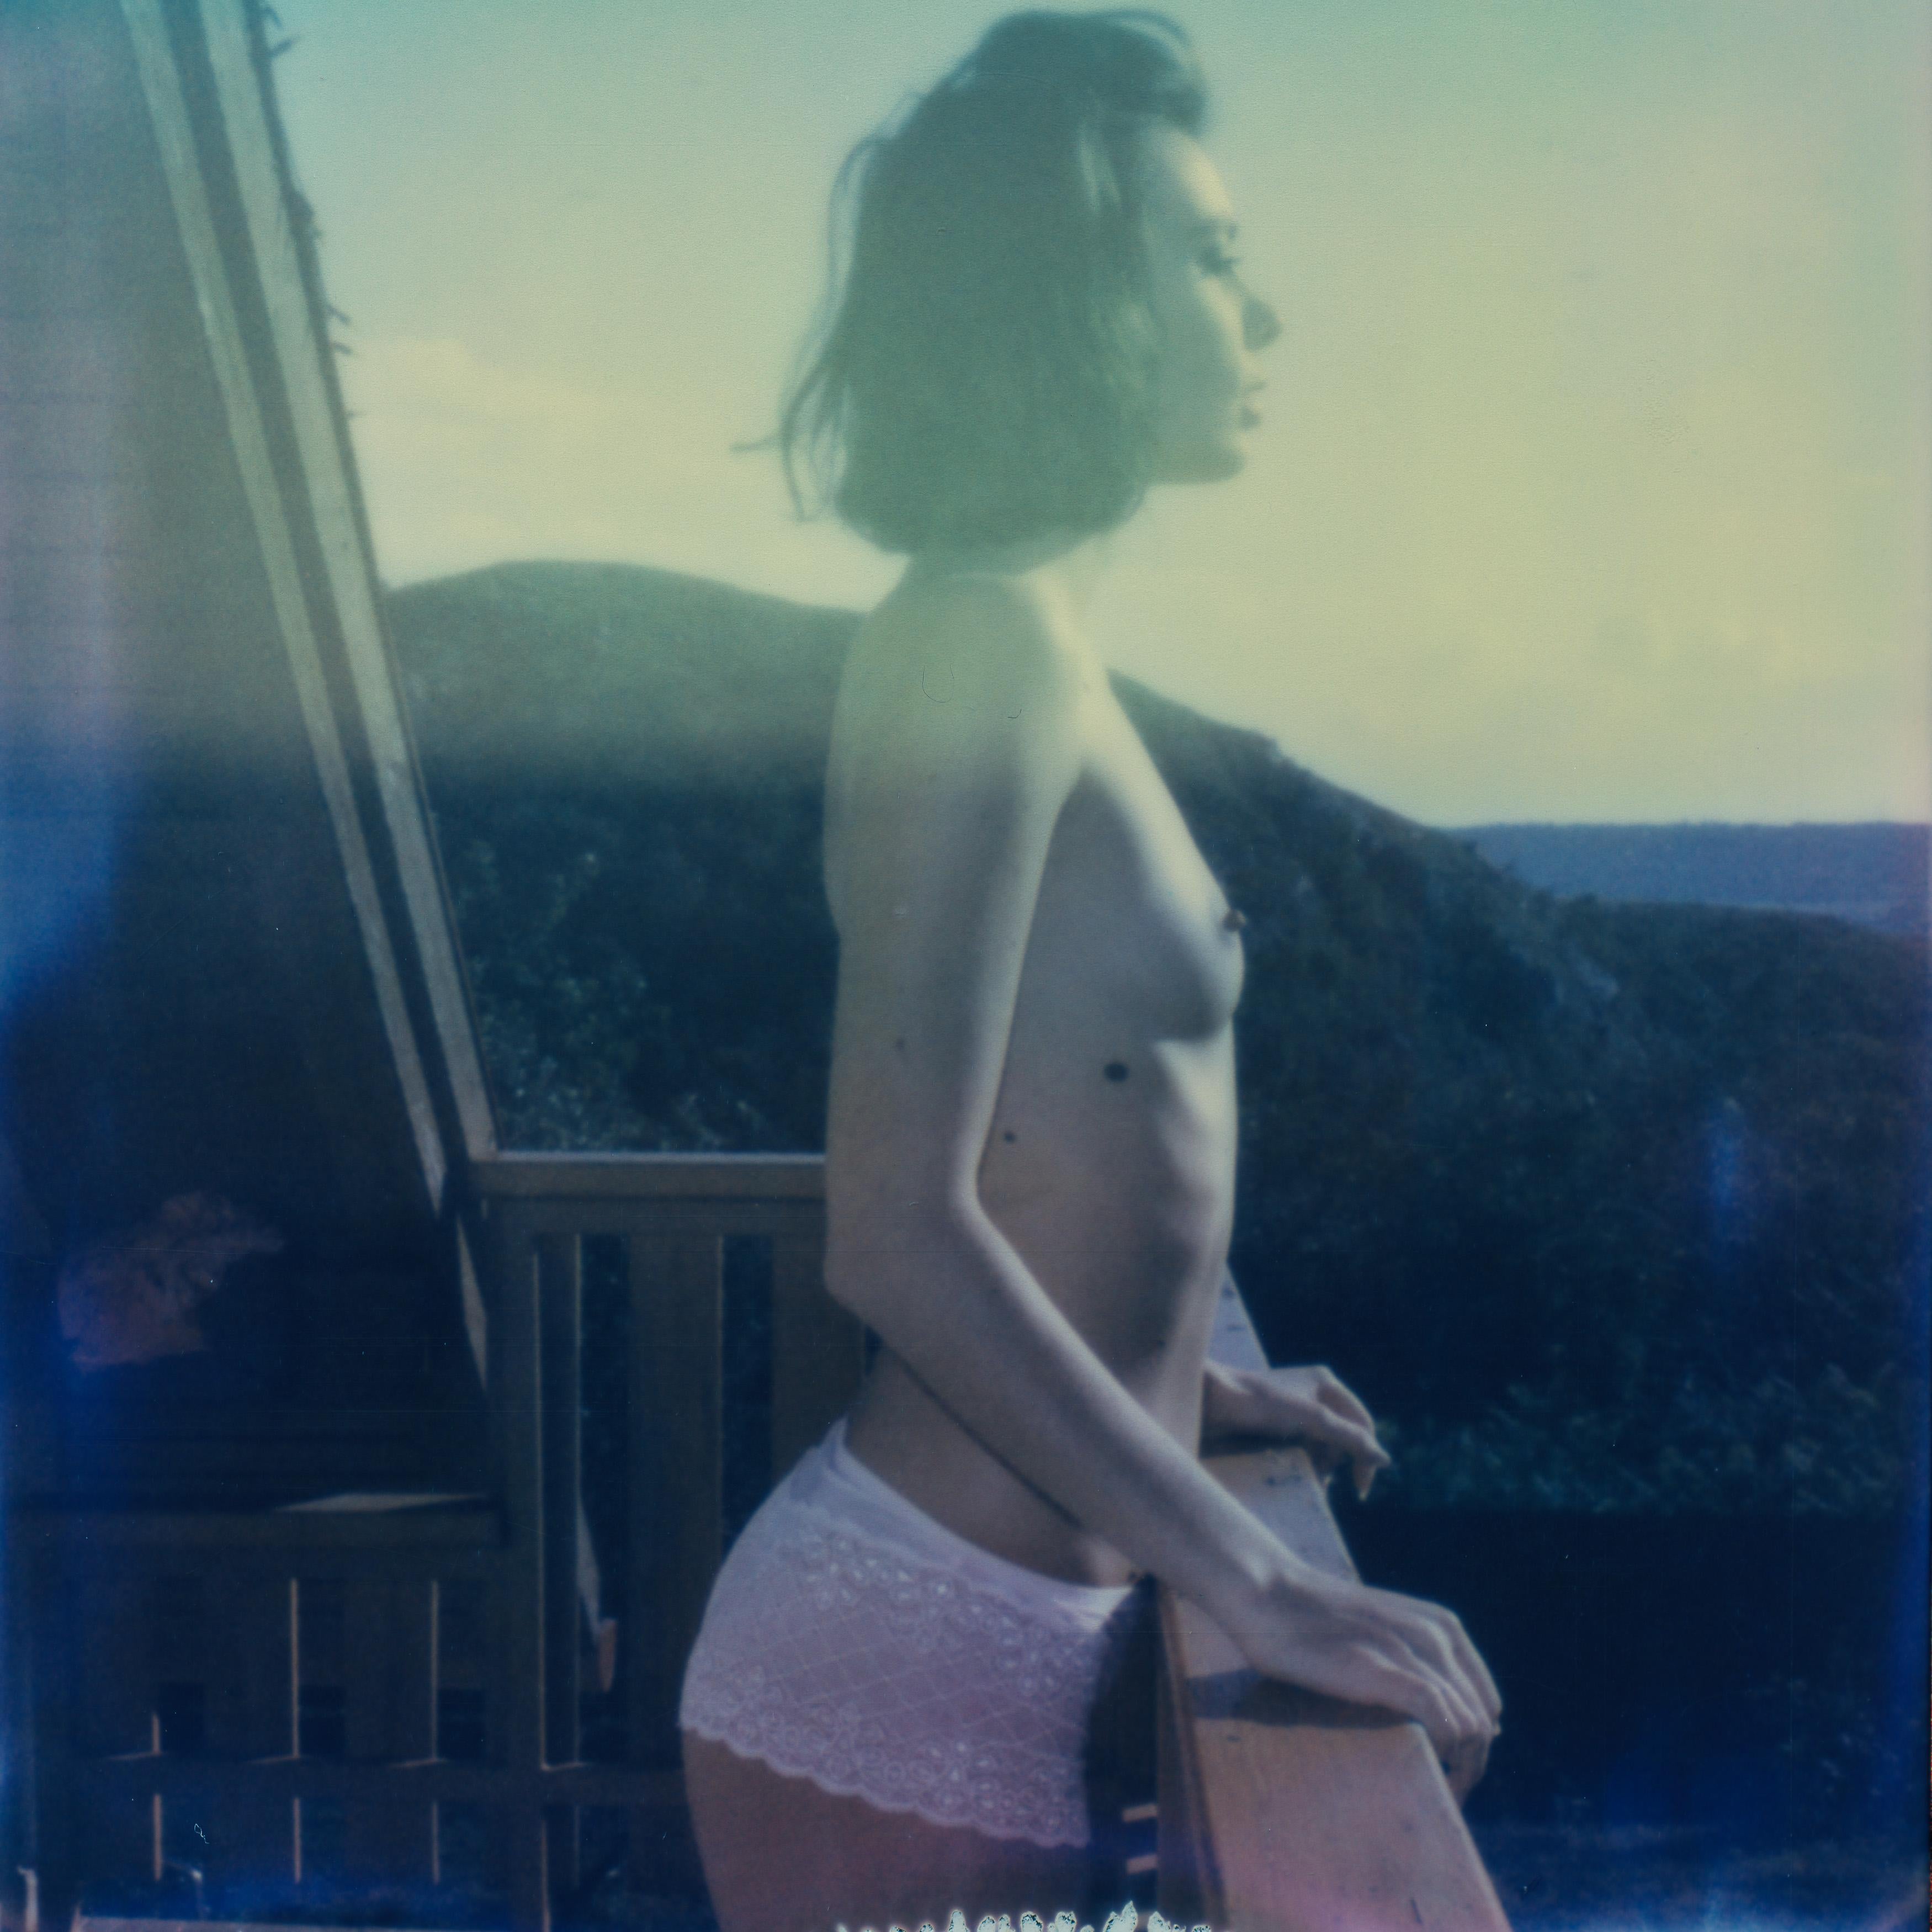 Kirsten Thys van den Audenaerde Nude Photograph – Siebdruck – Zeitgenössisch, Nackt, Frauen, Polaroid, 21. Jahrhundert